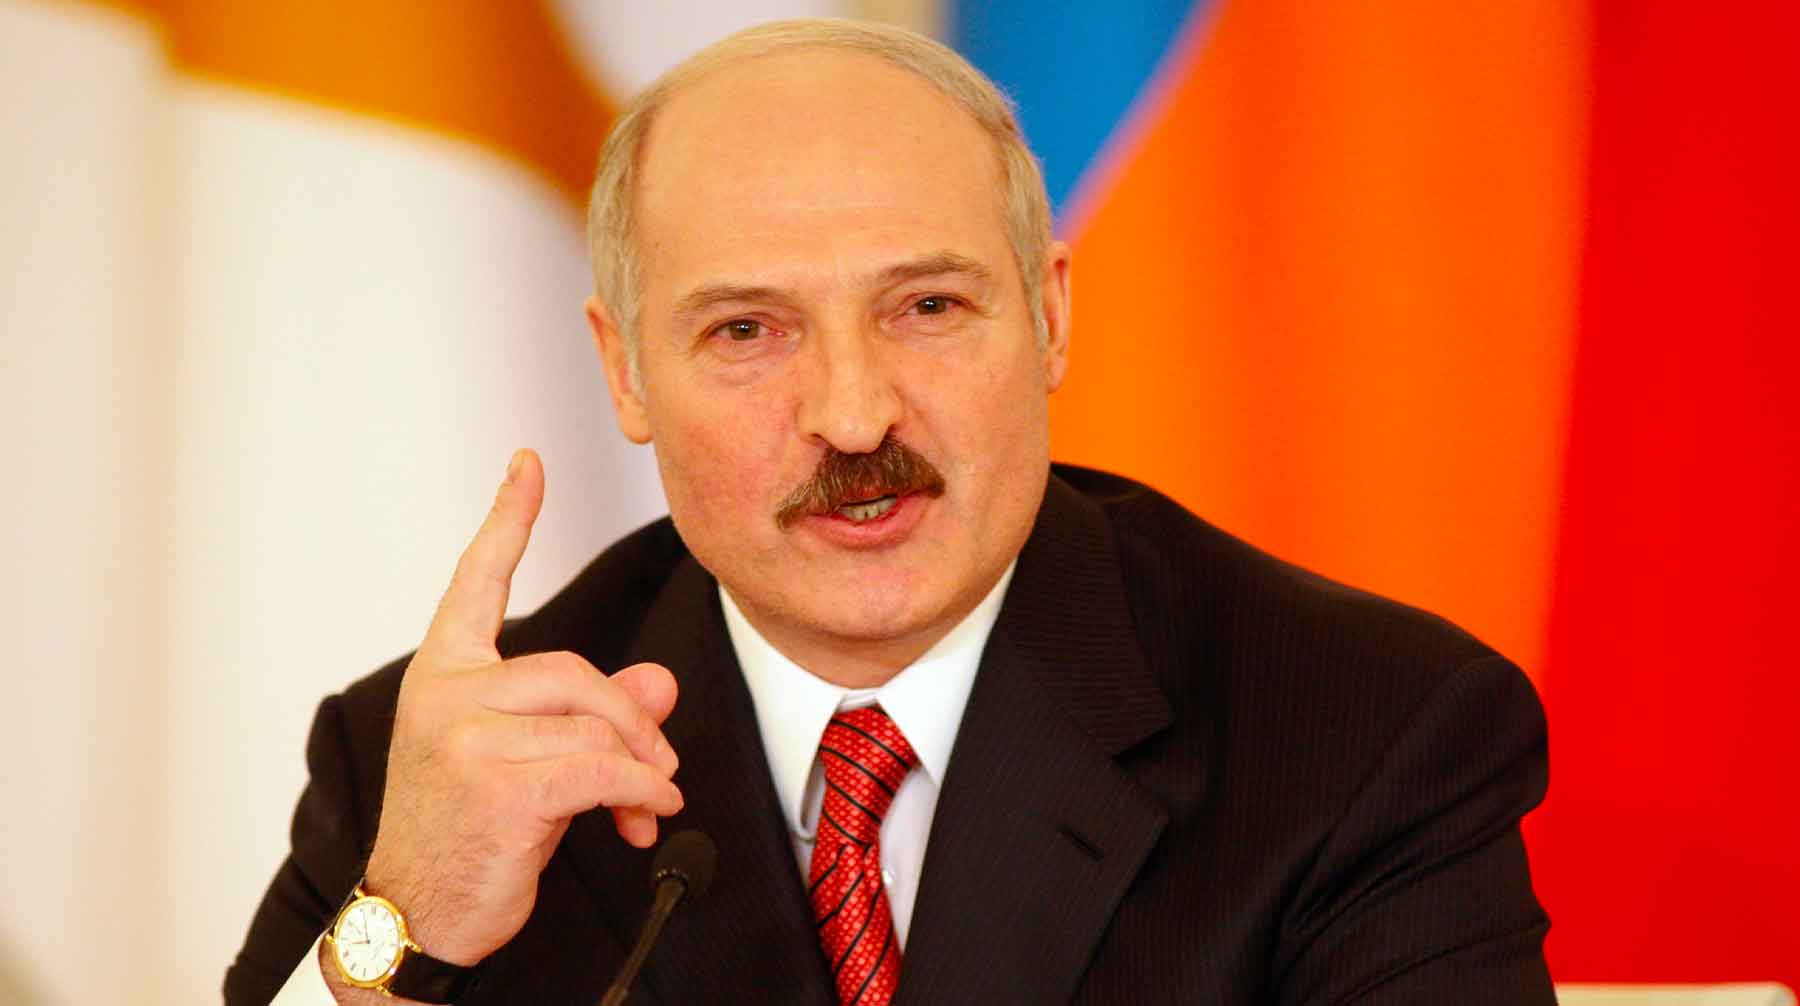 Белоруссия относится к российским гражданам нормально и защищает их интересы, подчеркнул президент Фото: © GLOBAL LOOK press / Anvar Galeev